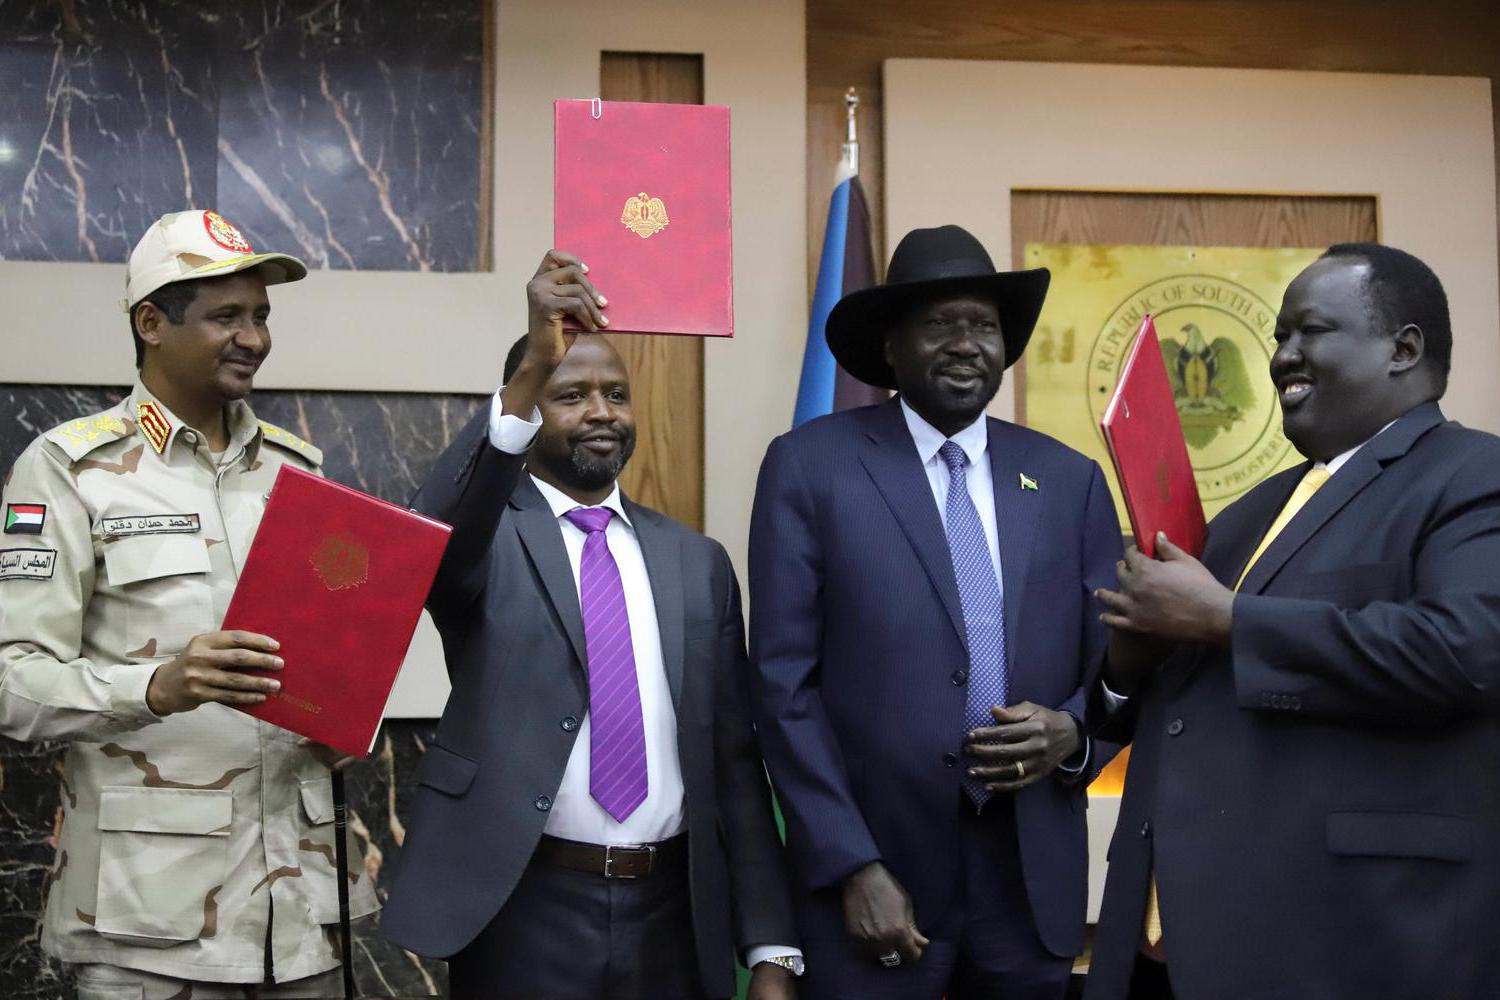 Ilustrasi, Jenderal Mohamed Hamdan Dagalo, Wakil Ketua Dewan Transisional Militer Sudan (kiri), Alhadi Idris, Ketua Front Revolusioner Sudan (tengah), Presiden Sudan Selatan Salva Kiir dan Tut Galwak, Ketua Komite Mediasi Sudan Selatan memegang dokumen ke